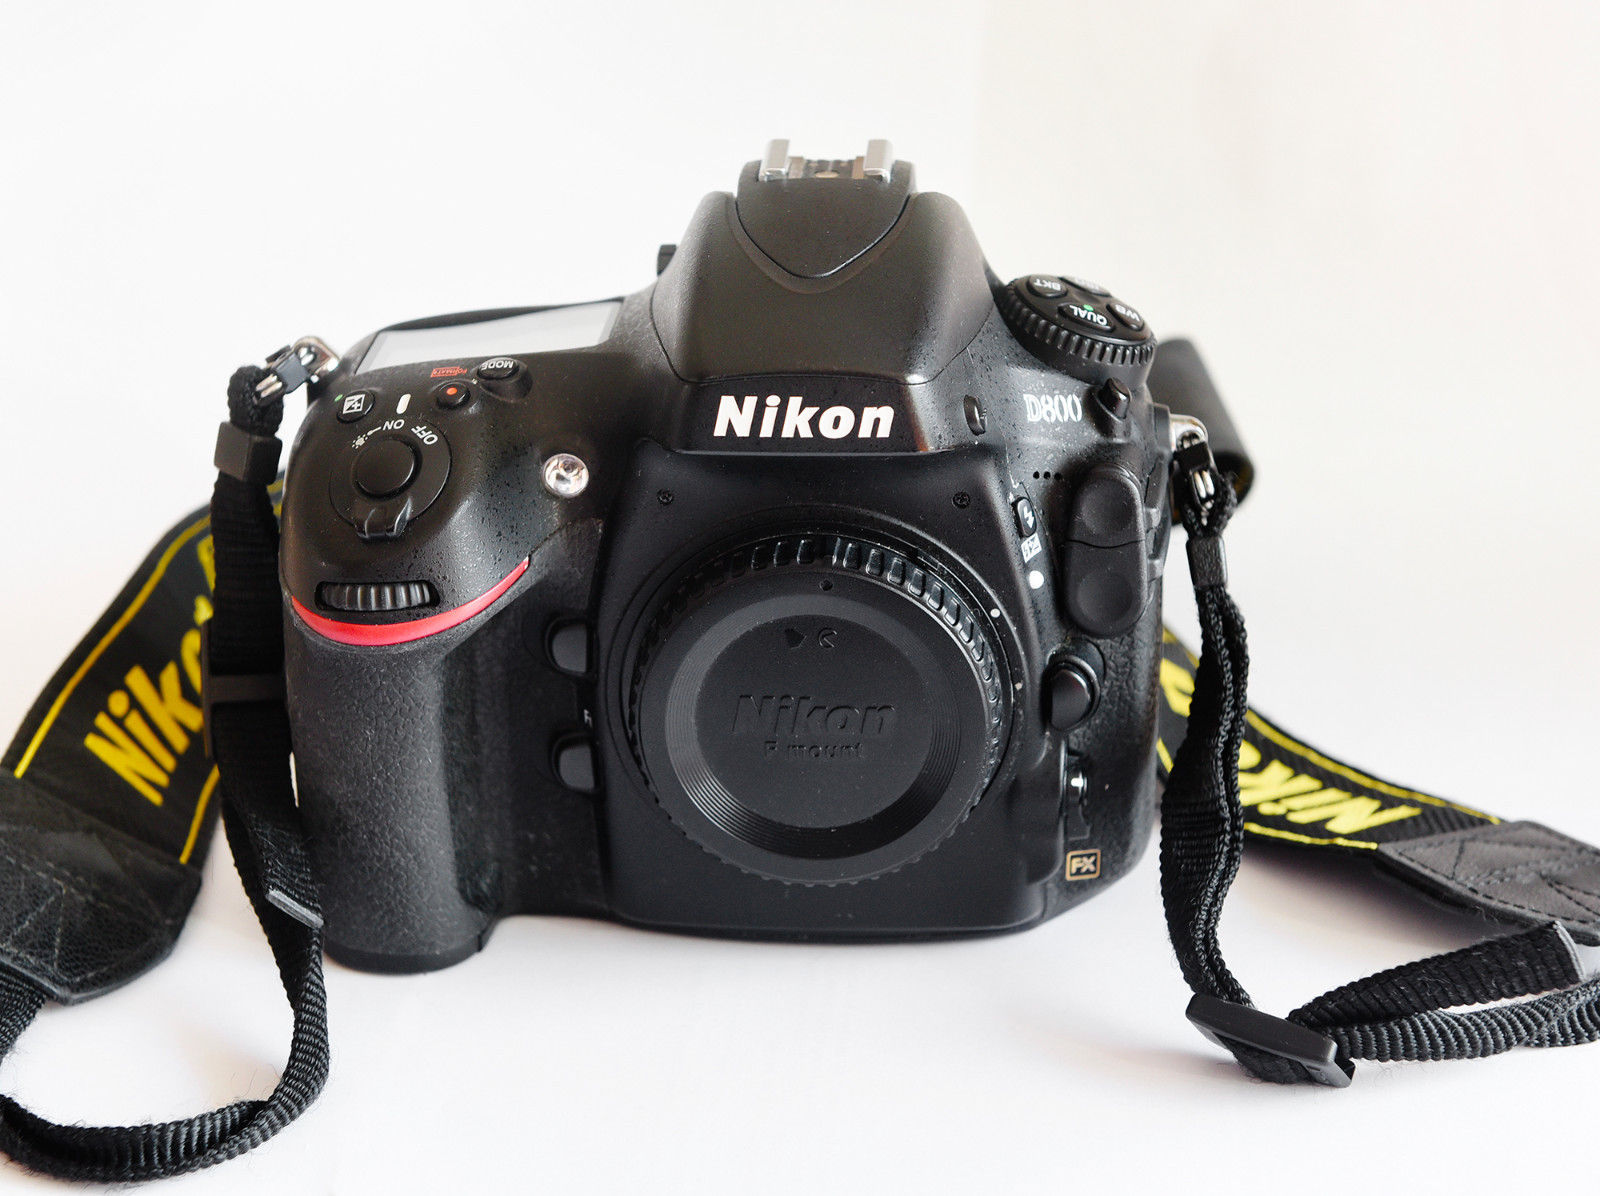 Nikon D800 Gehäuse Vollformat 36.3 MP SLR-Digitalkamera - Schwarz - TOP